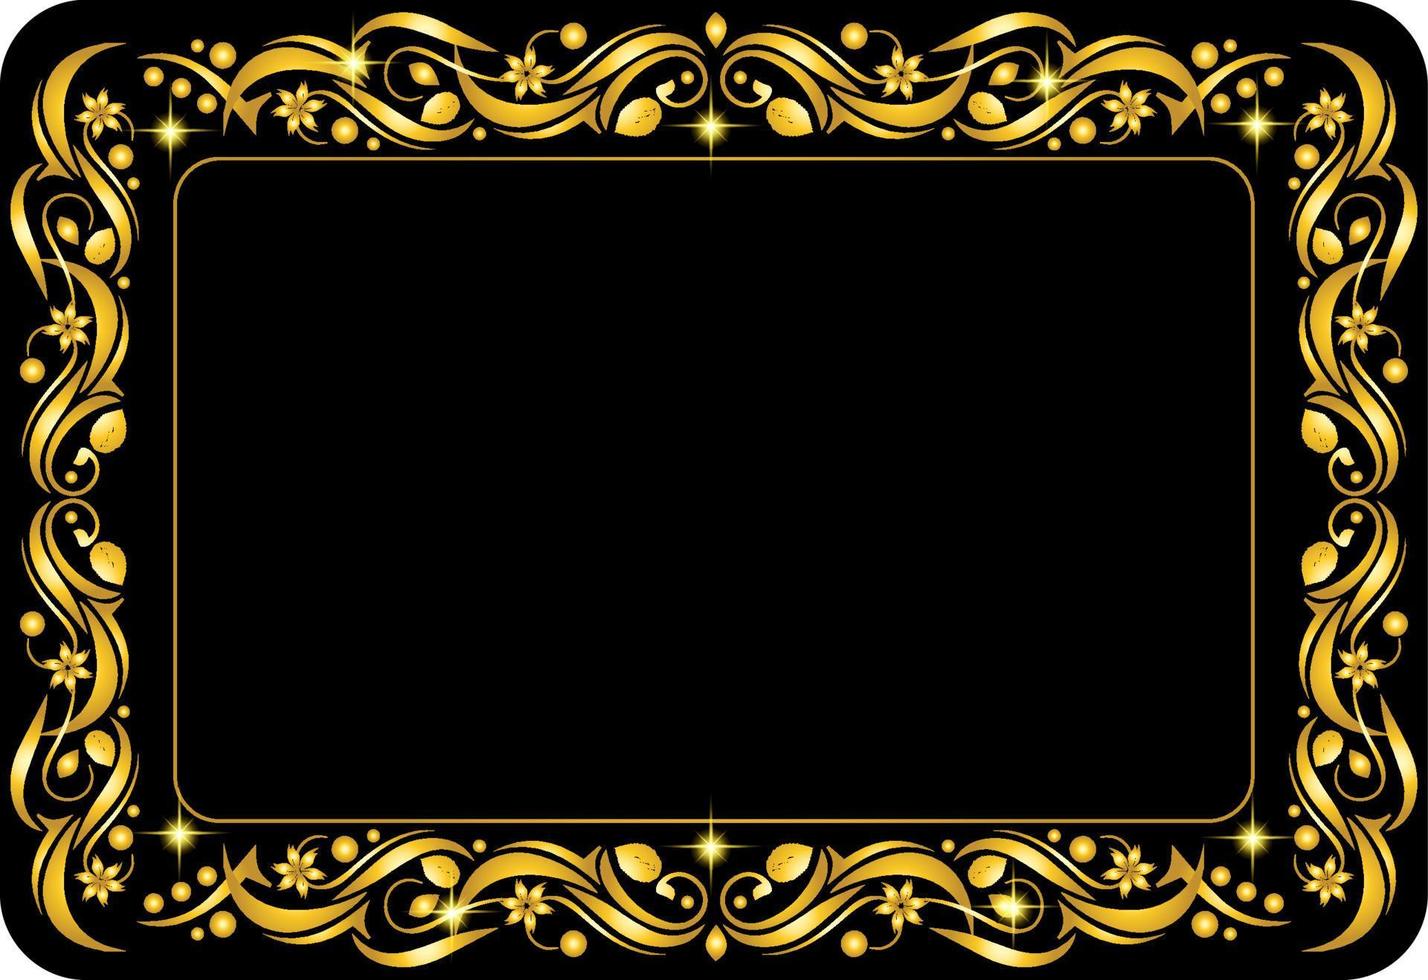 diseño de tarjeta de marco de borde floral dorado con luz de estrellas sobre fondo negro vector